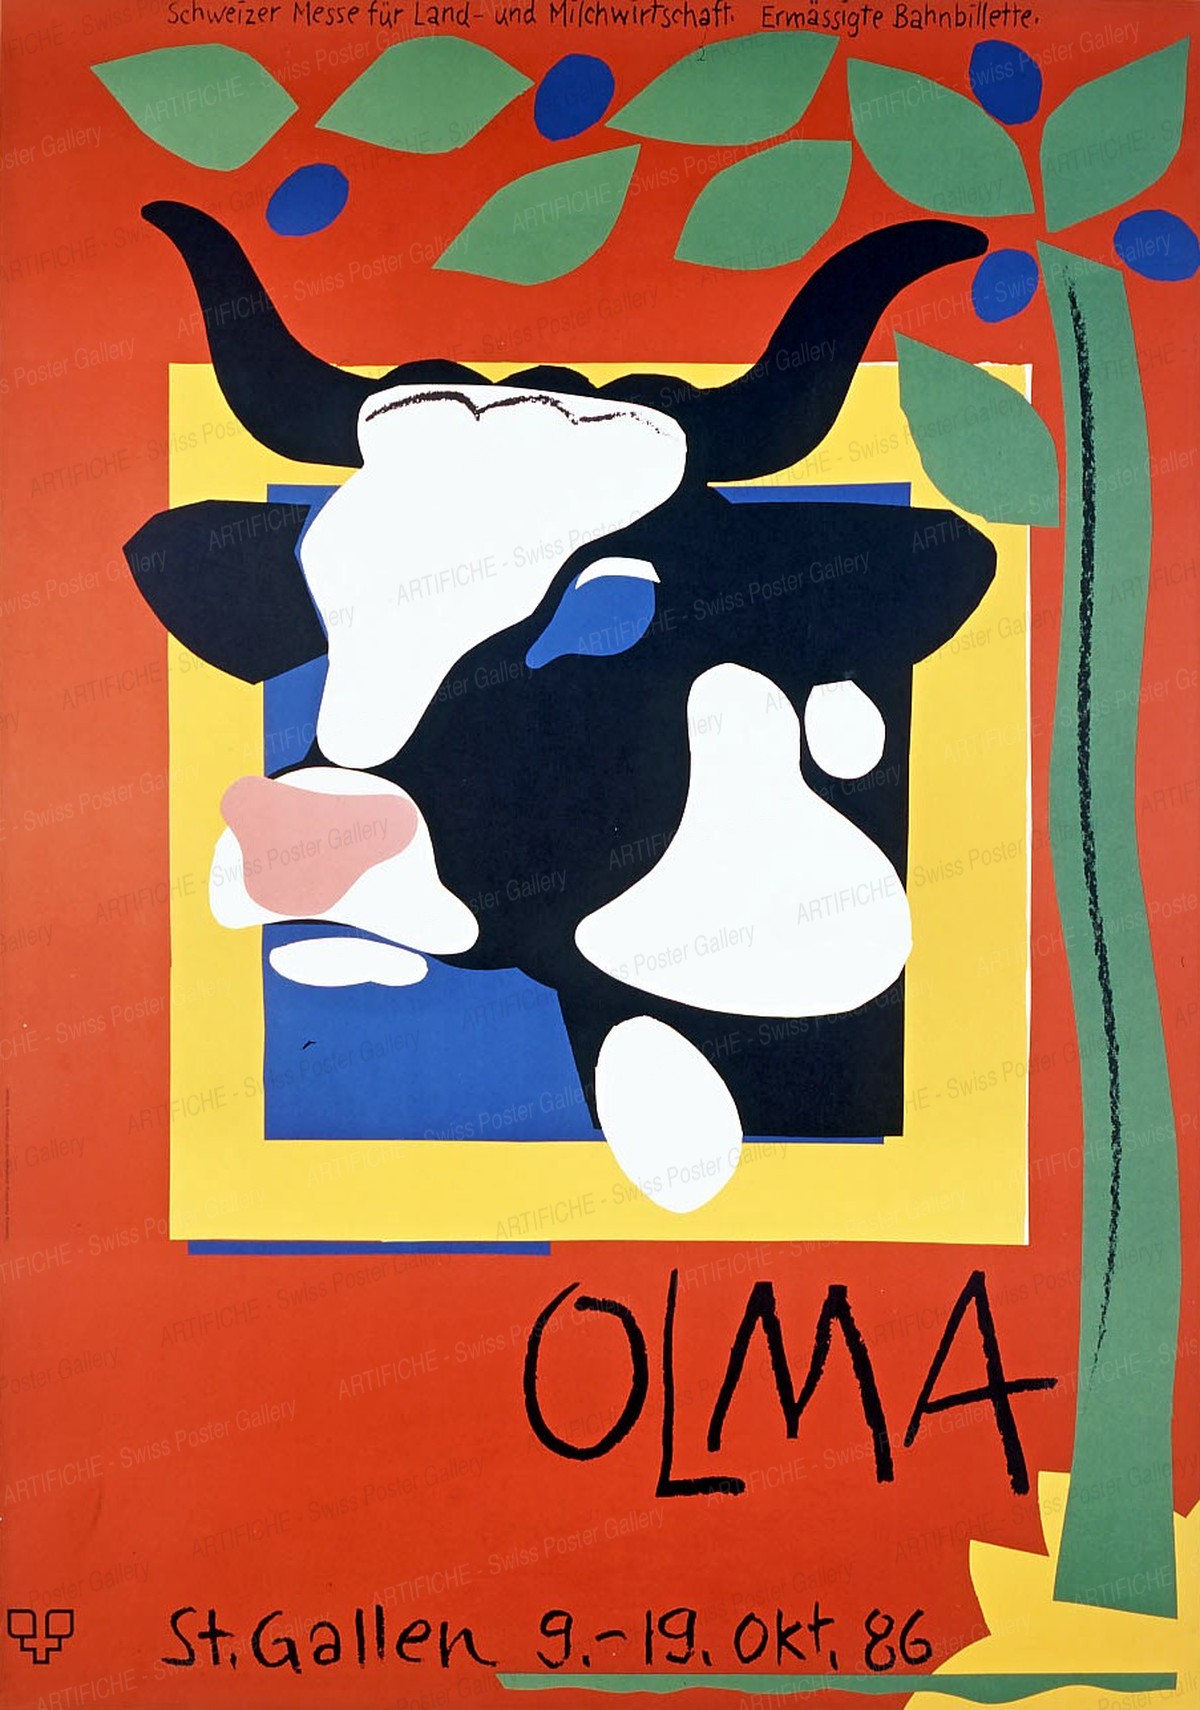 OLMA Schweizer Messe für Land- und Milchwirtschaft St. Gallen 9. – 19. Oktober 1986, Ruedi Külling